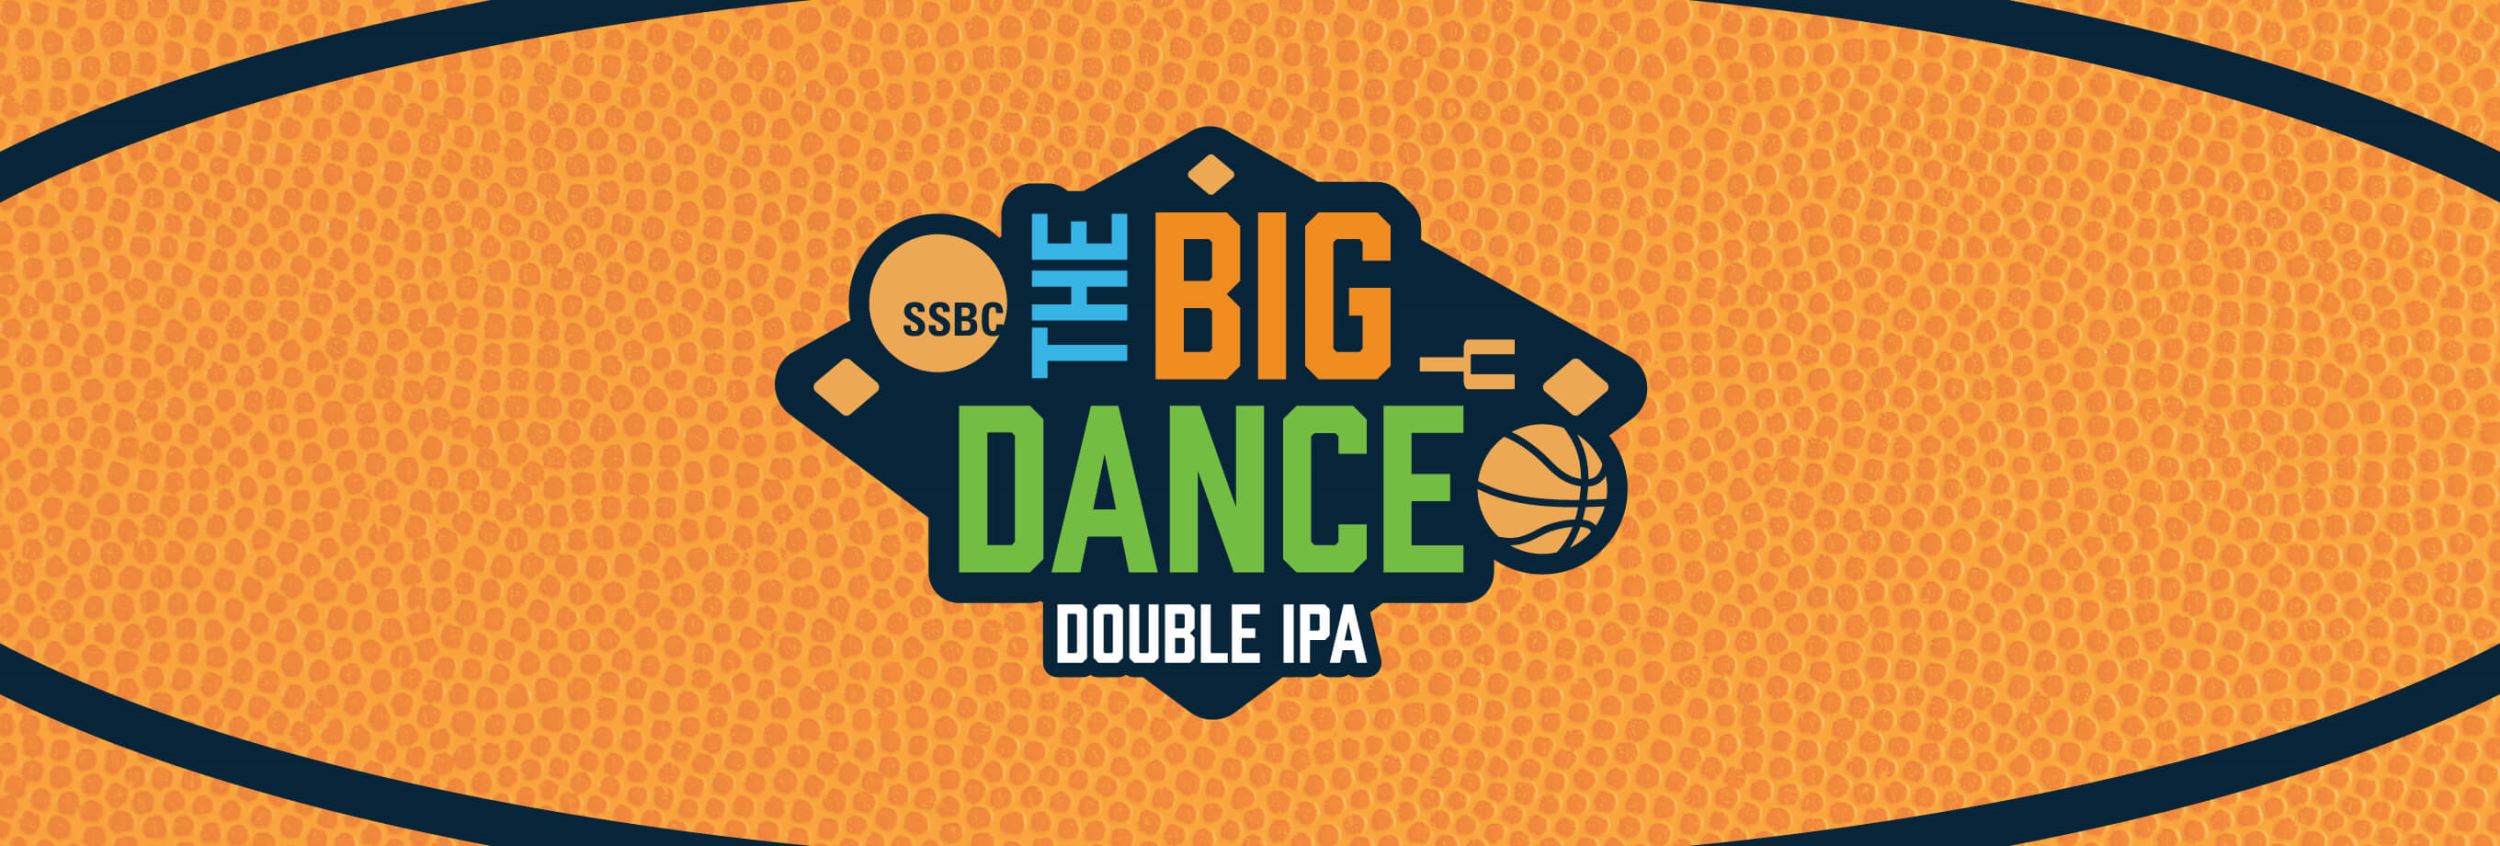 The Big Dance - Double IPA